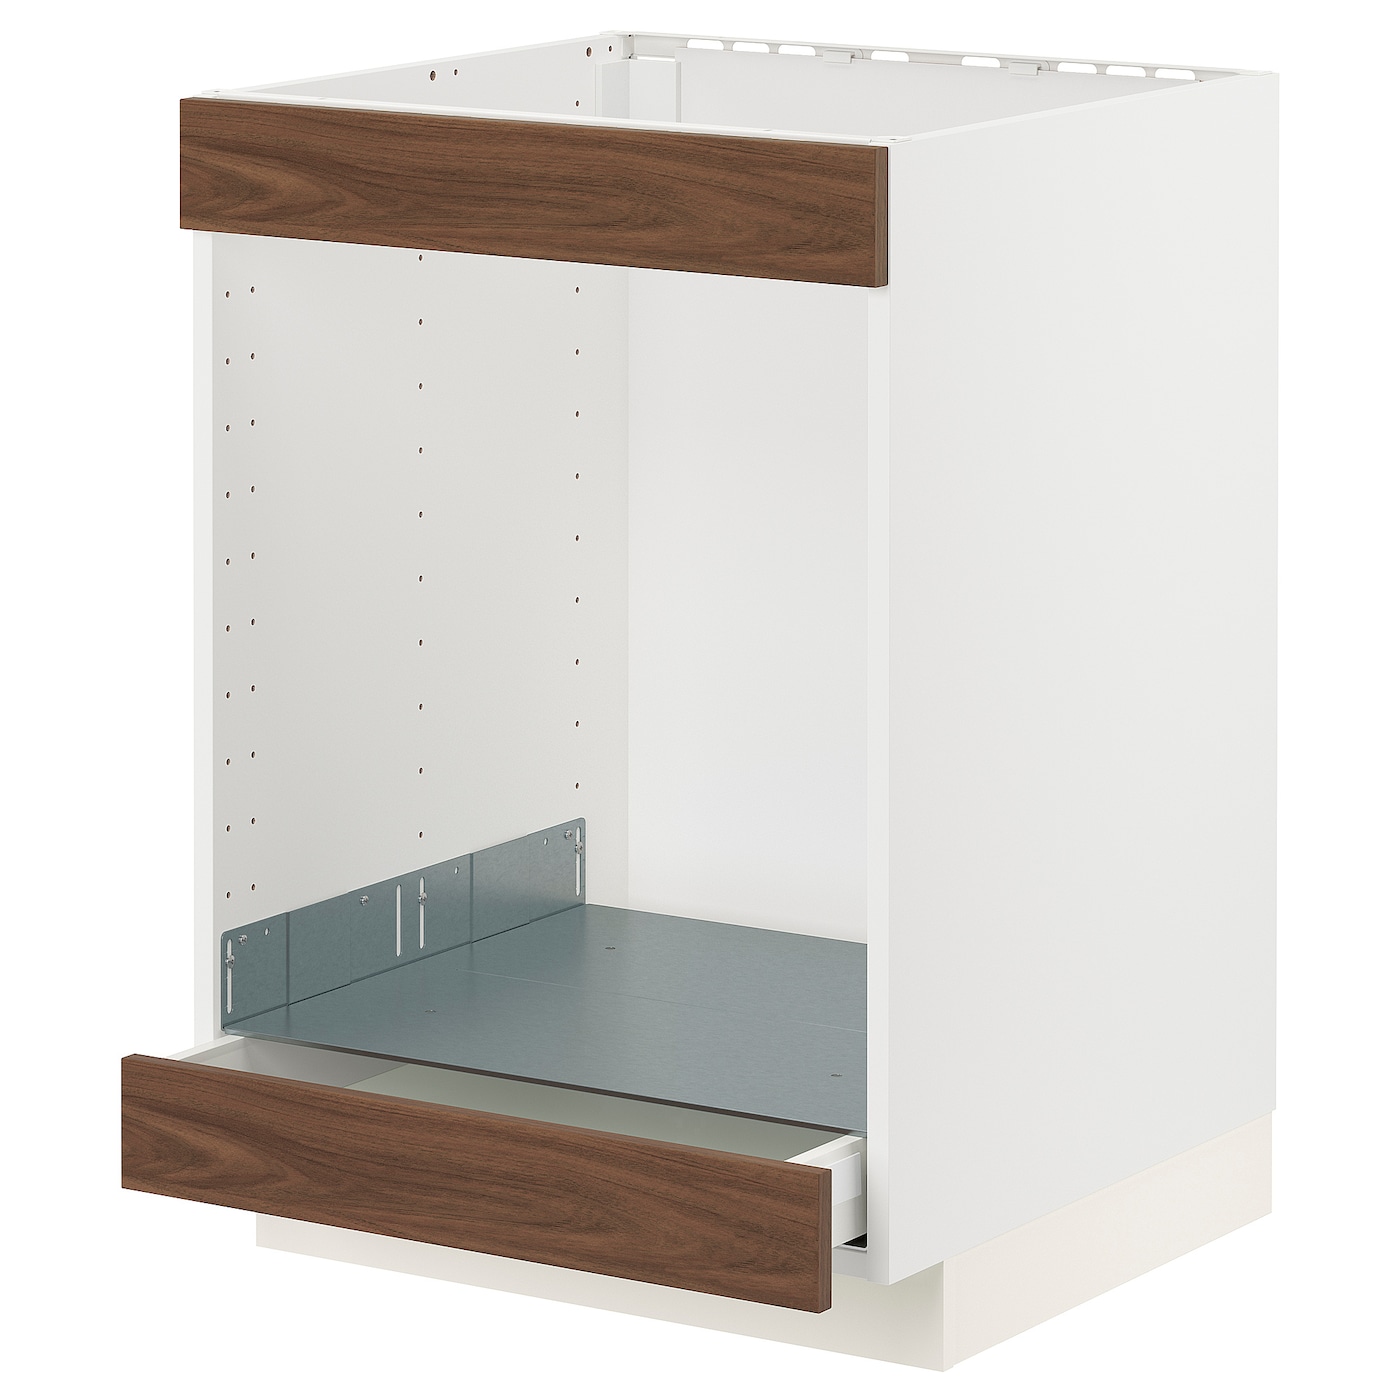 Напольный шкаф - IKEA METOD MAXIMERA, 88x62x60см, белый, МЕТОД МАКСИМЕРА ИКЕА